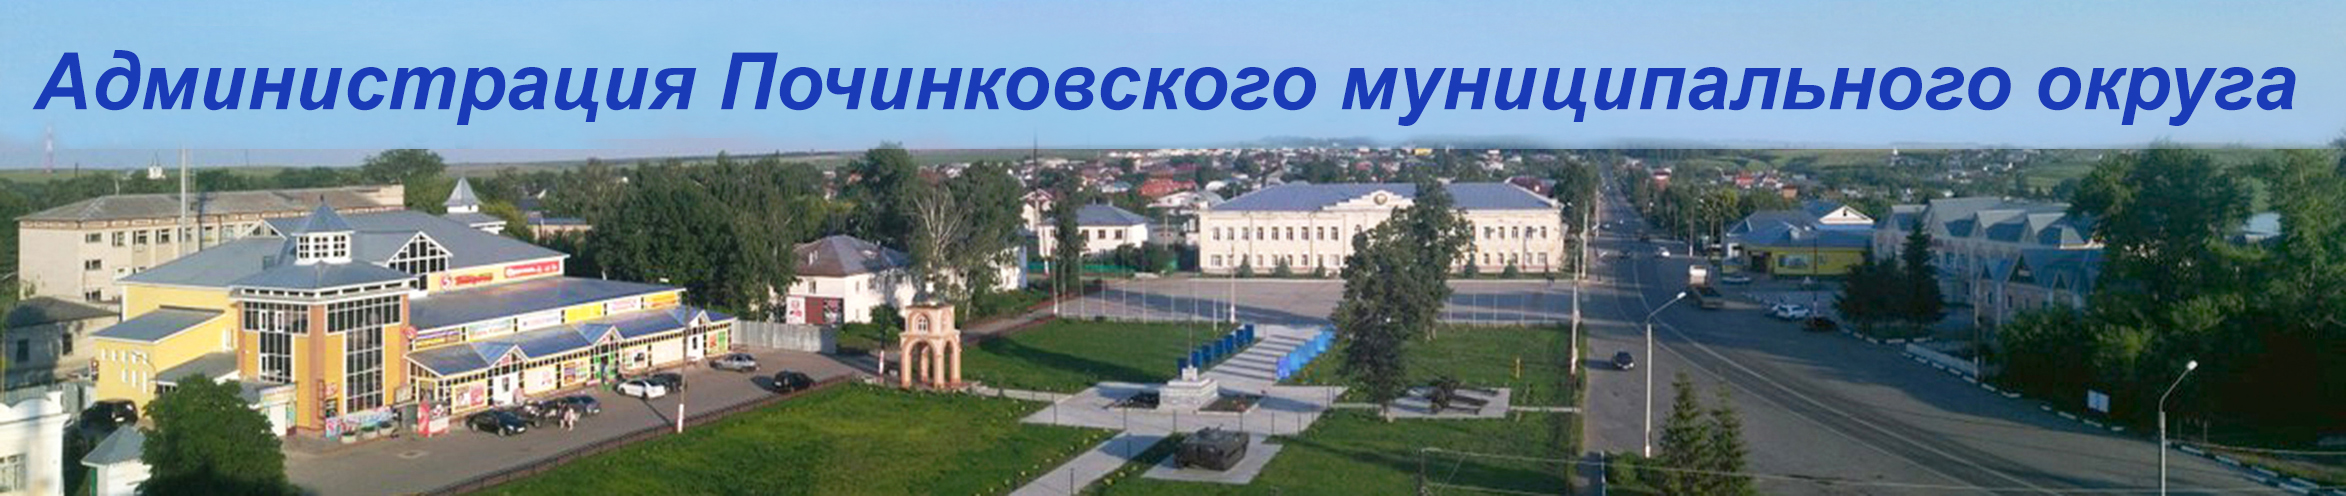 Администрация Починковского округа